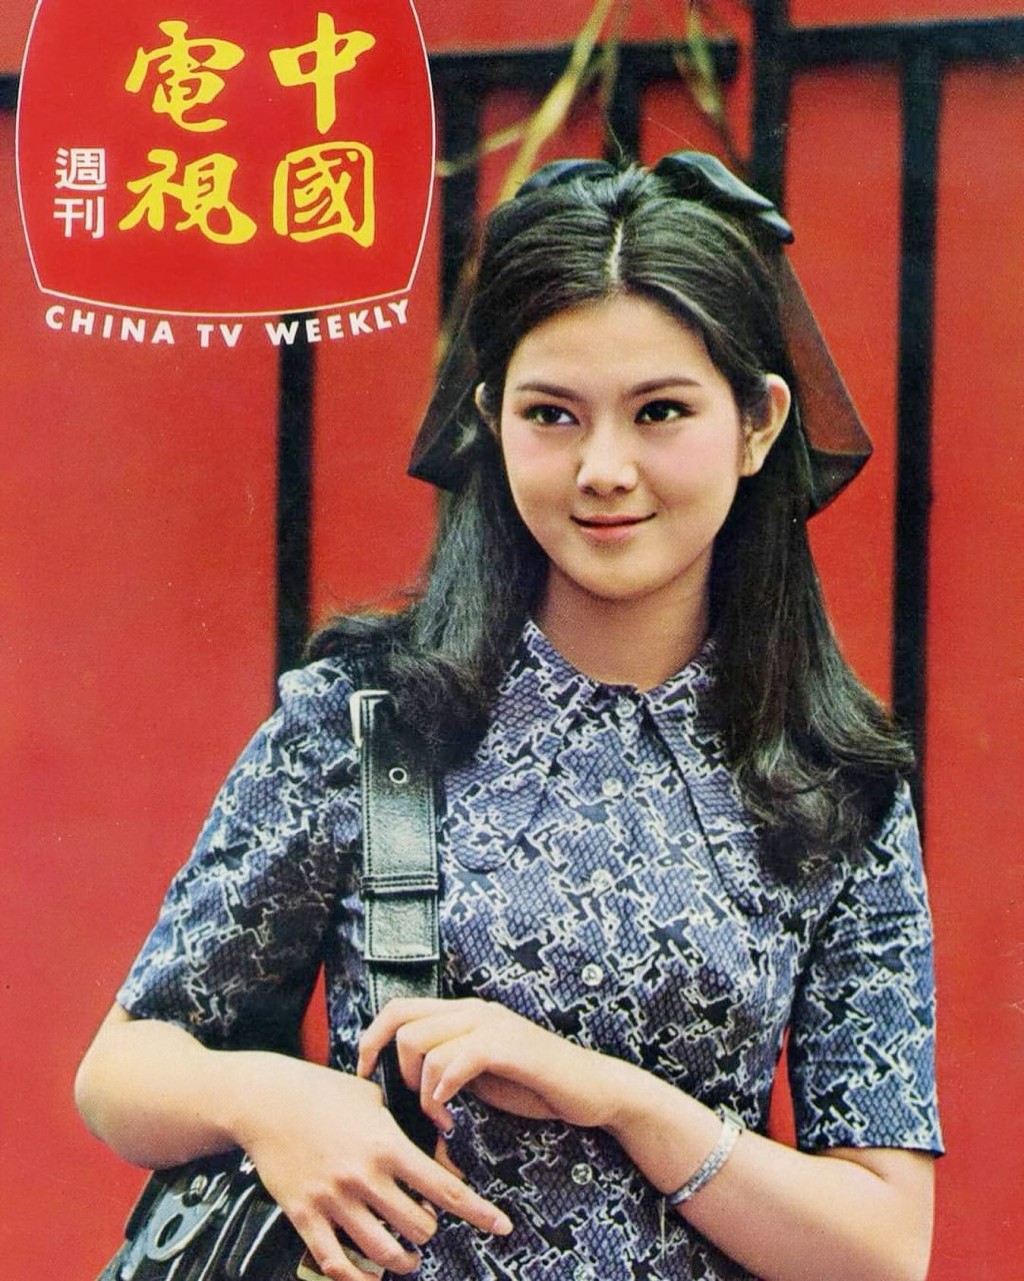 謝玲玲在IG分享不少當年的雜誌相。